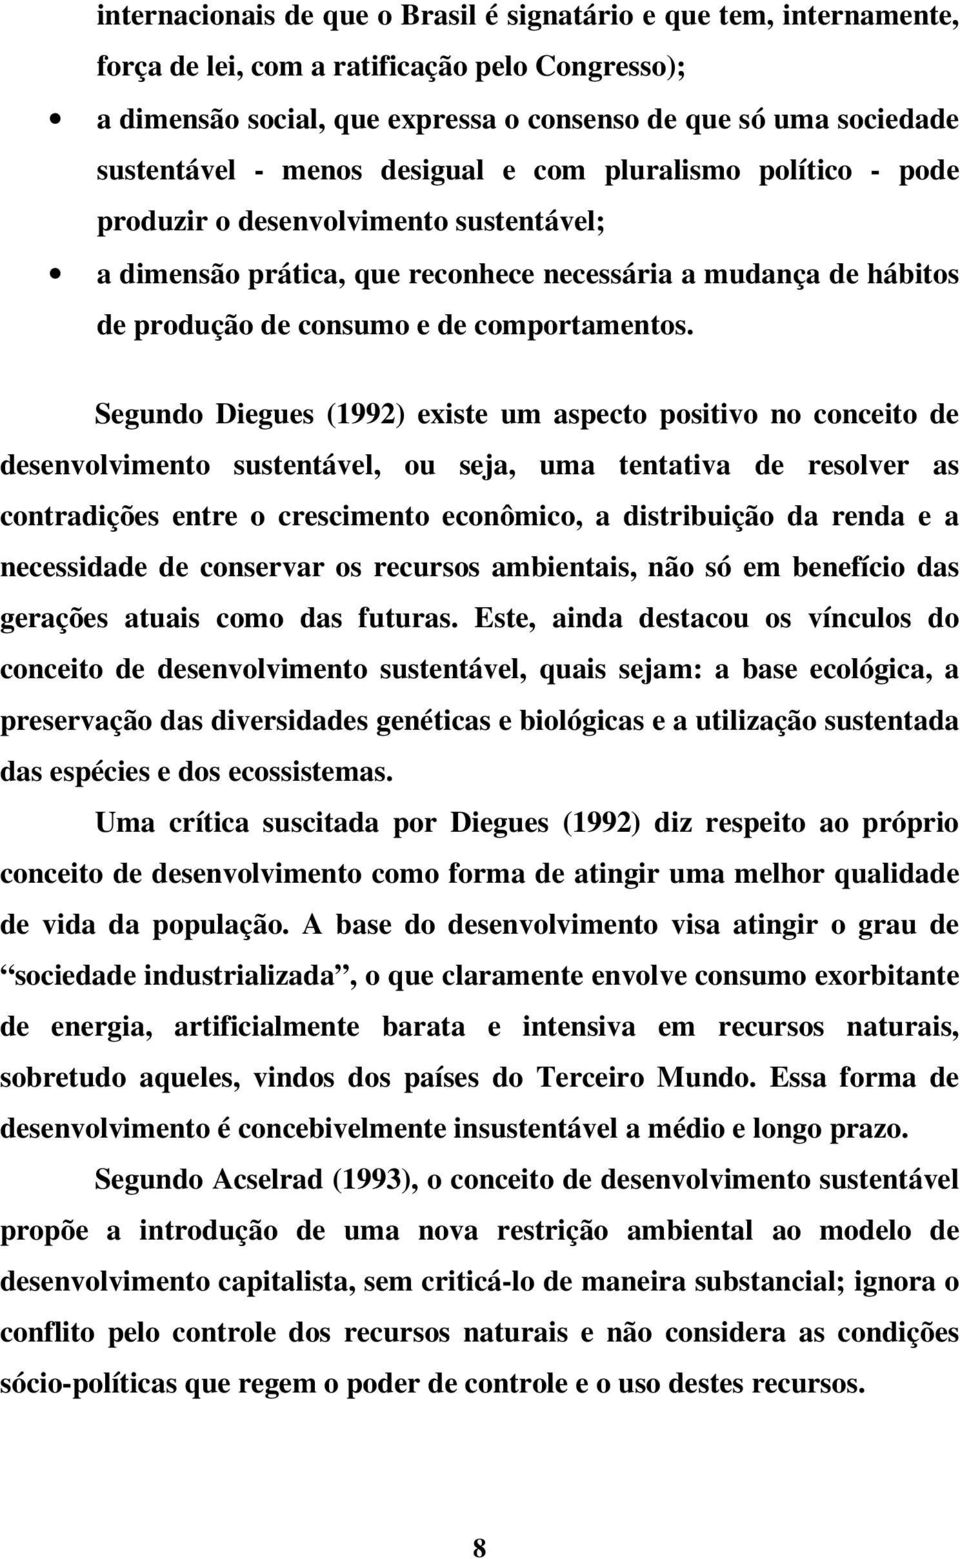 Segundo Diegues (1992) existe um aspecto positivo no conceito de desenvolvimento sustentável, ou seja, uma tentativa de resolver as contradições entre o crescimento econômico, a distribuição da renda